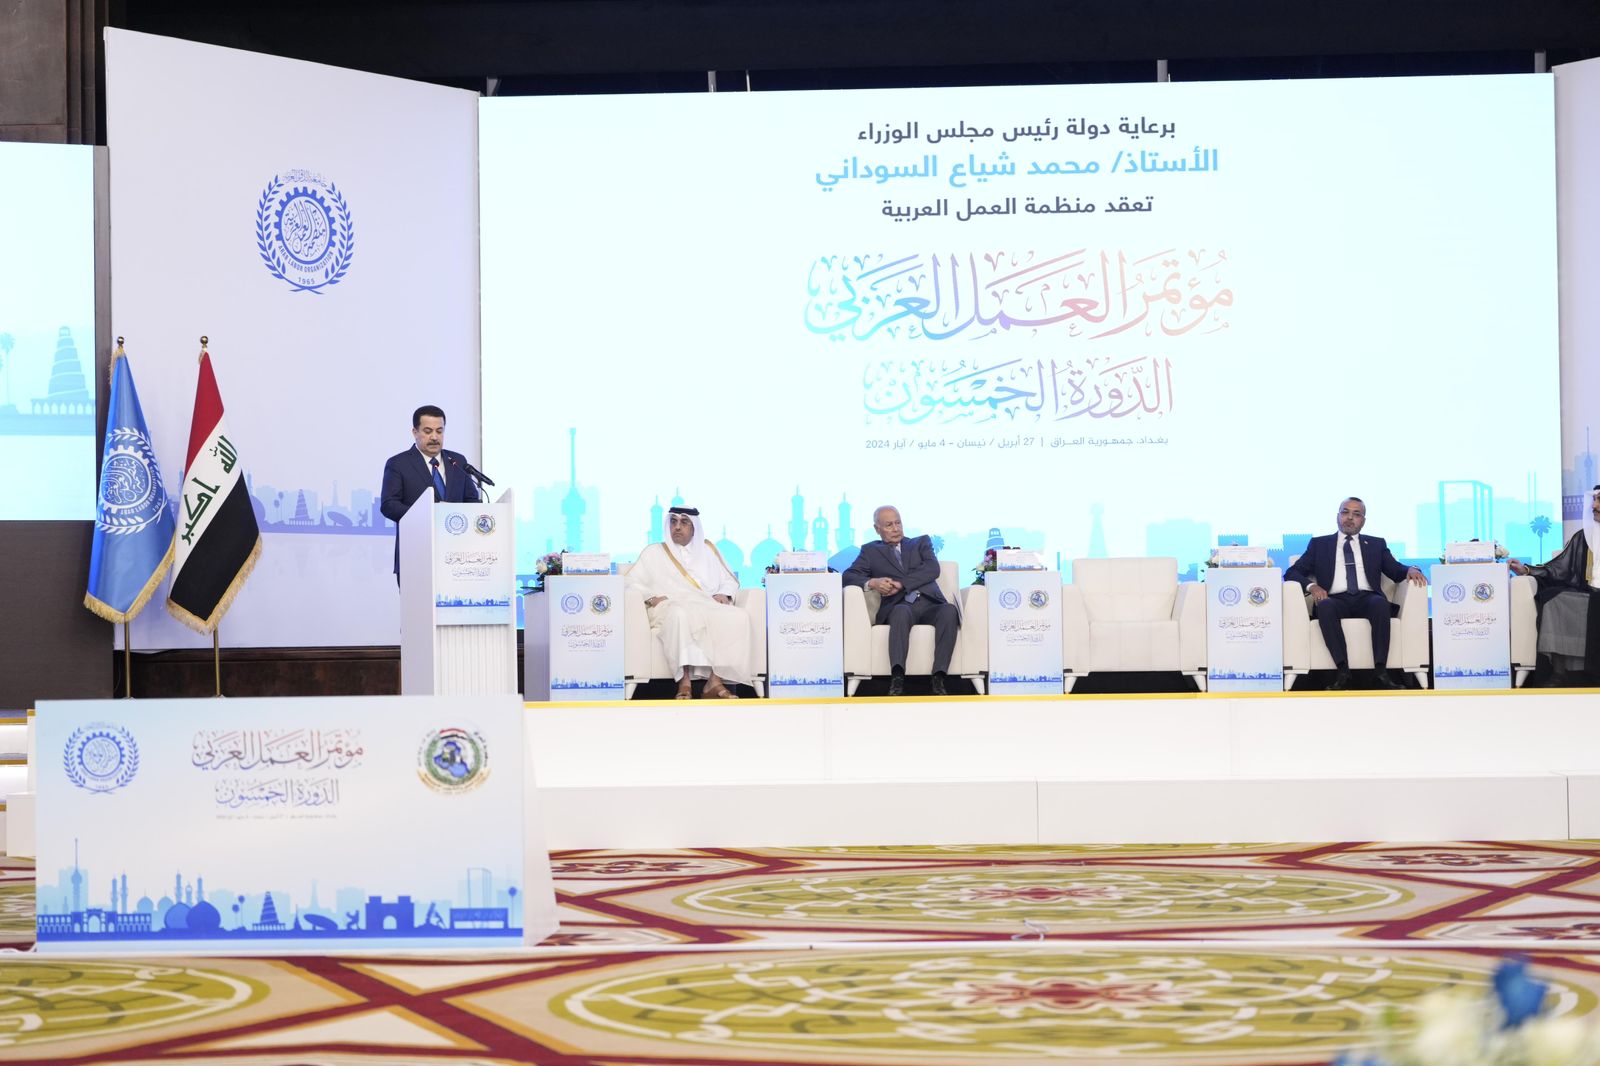 رئيس الوزراء العراقي يلقي كلمته في افتتاح الدورة الـ 50 لمؤتمر العمل العربي المنعقد في بغداد